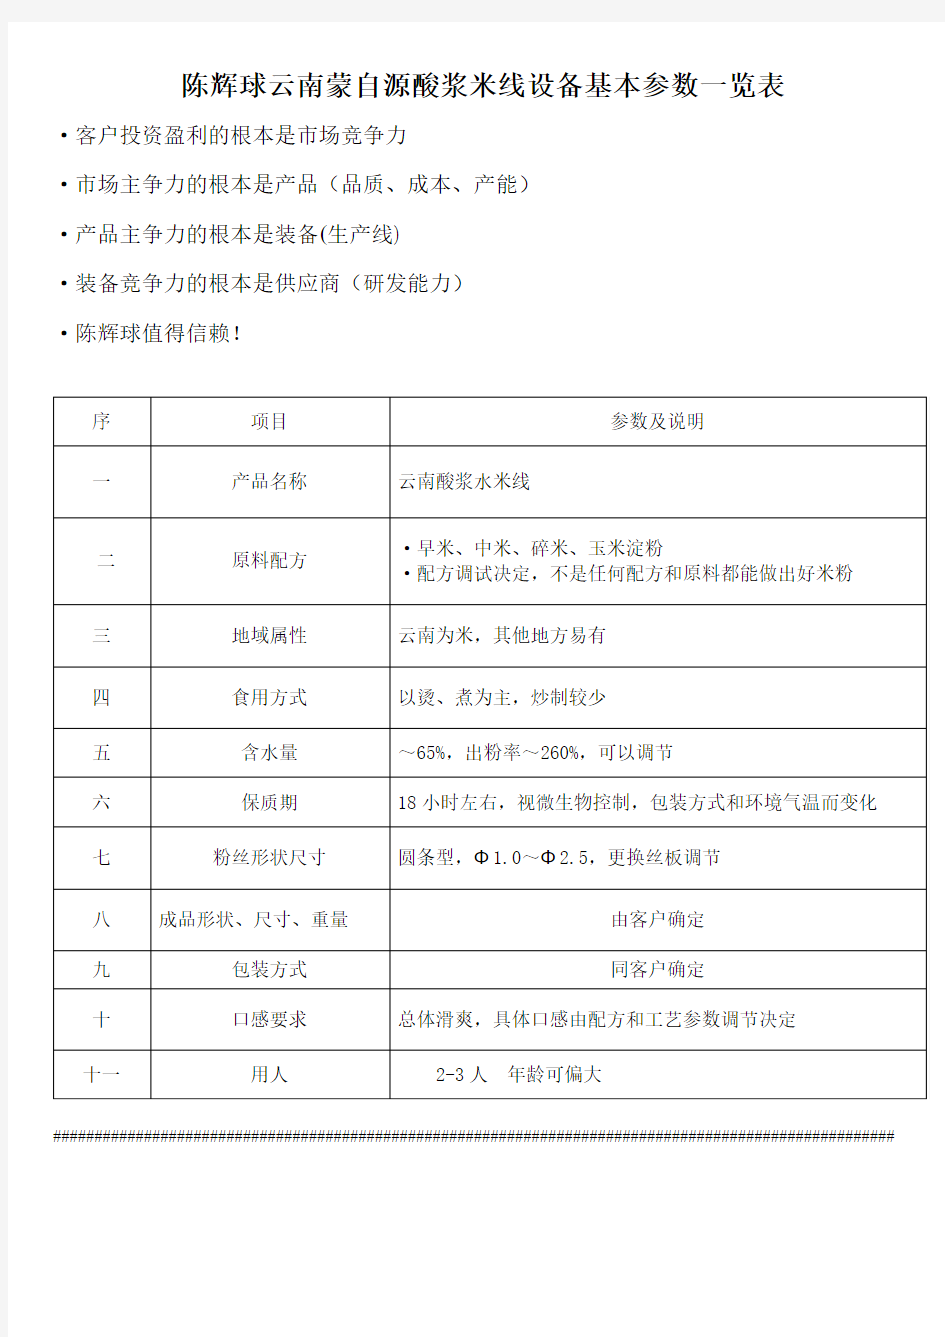 陈辉球云南蒙自源酸浆米线设备基本参数一览表